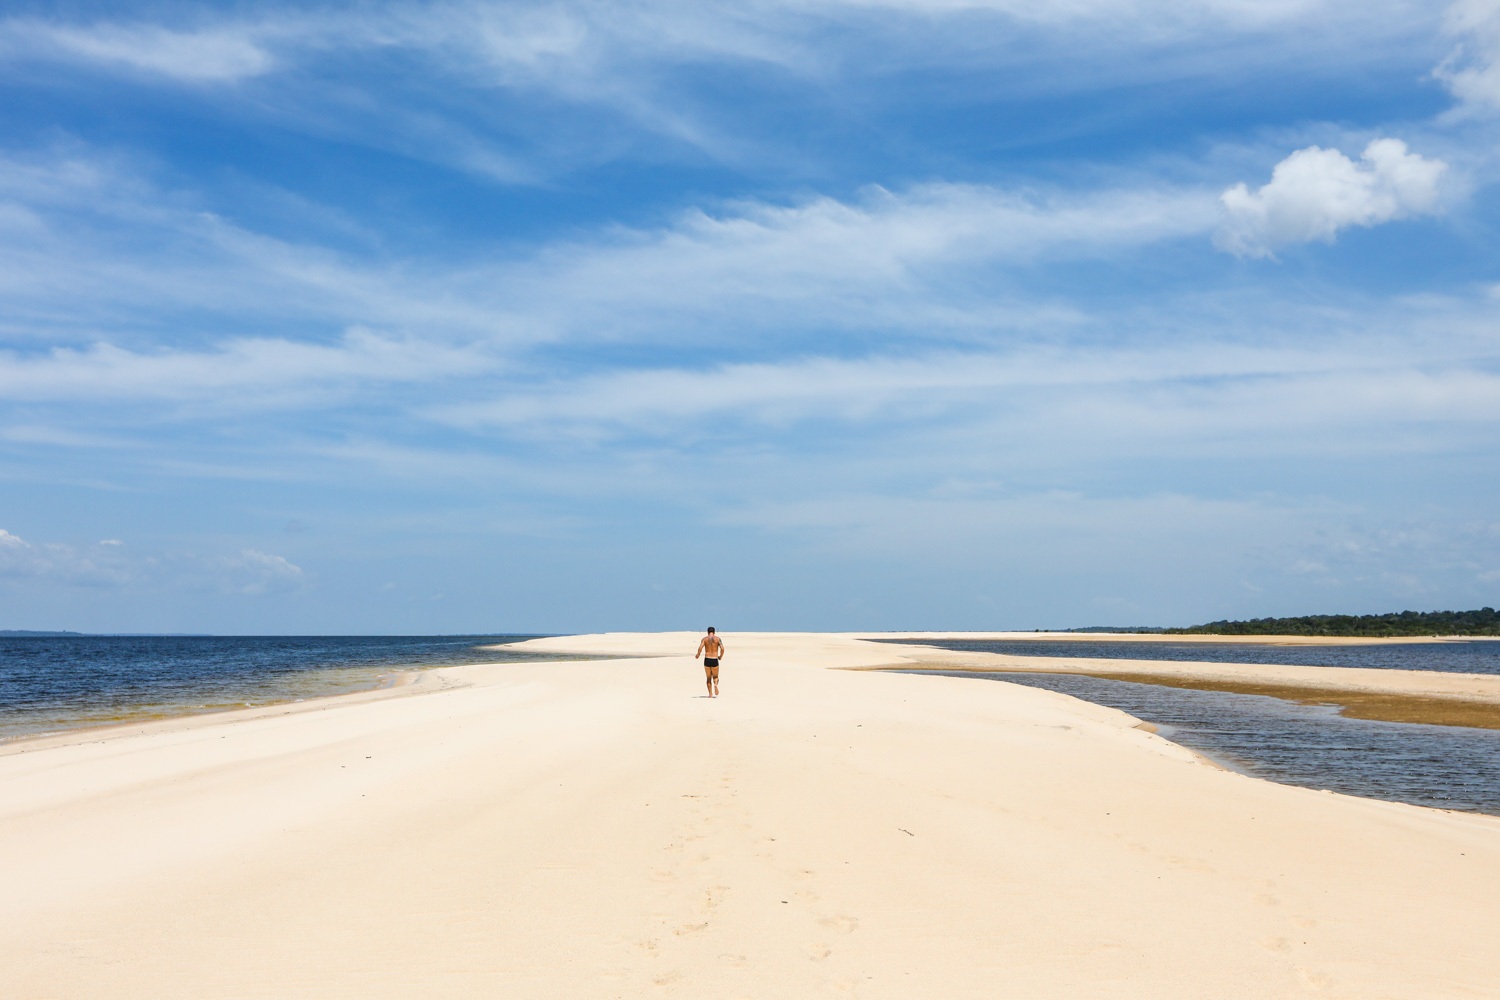 praias desertas no brasil